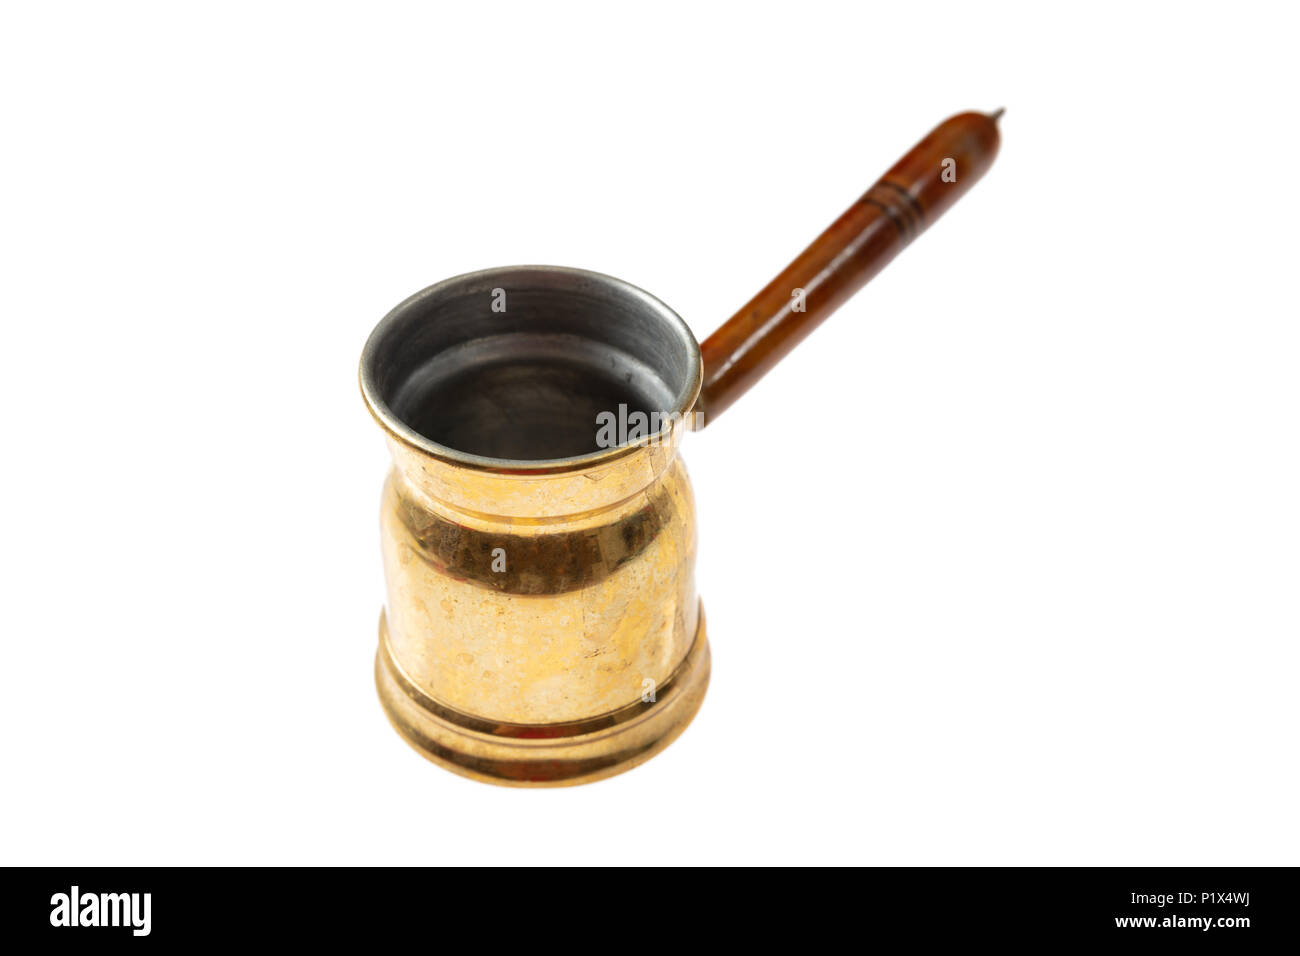 Concetto di cucina. Metallo in ottone bagno turco caffè greco pentola con manico in legno isolato su sfondo bianco Foto Stock